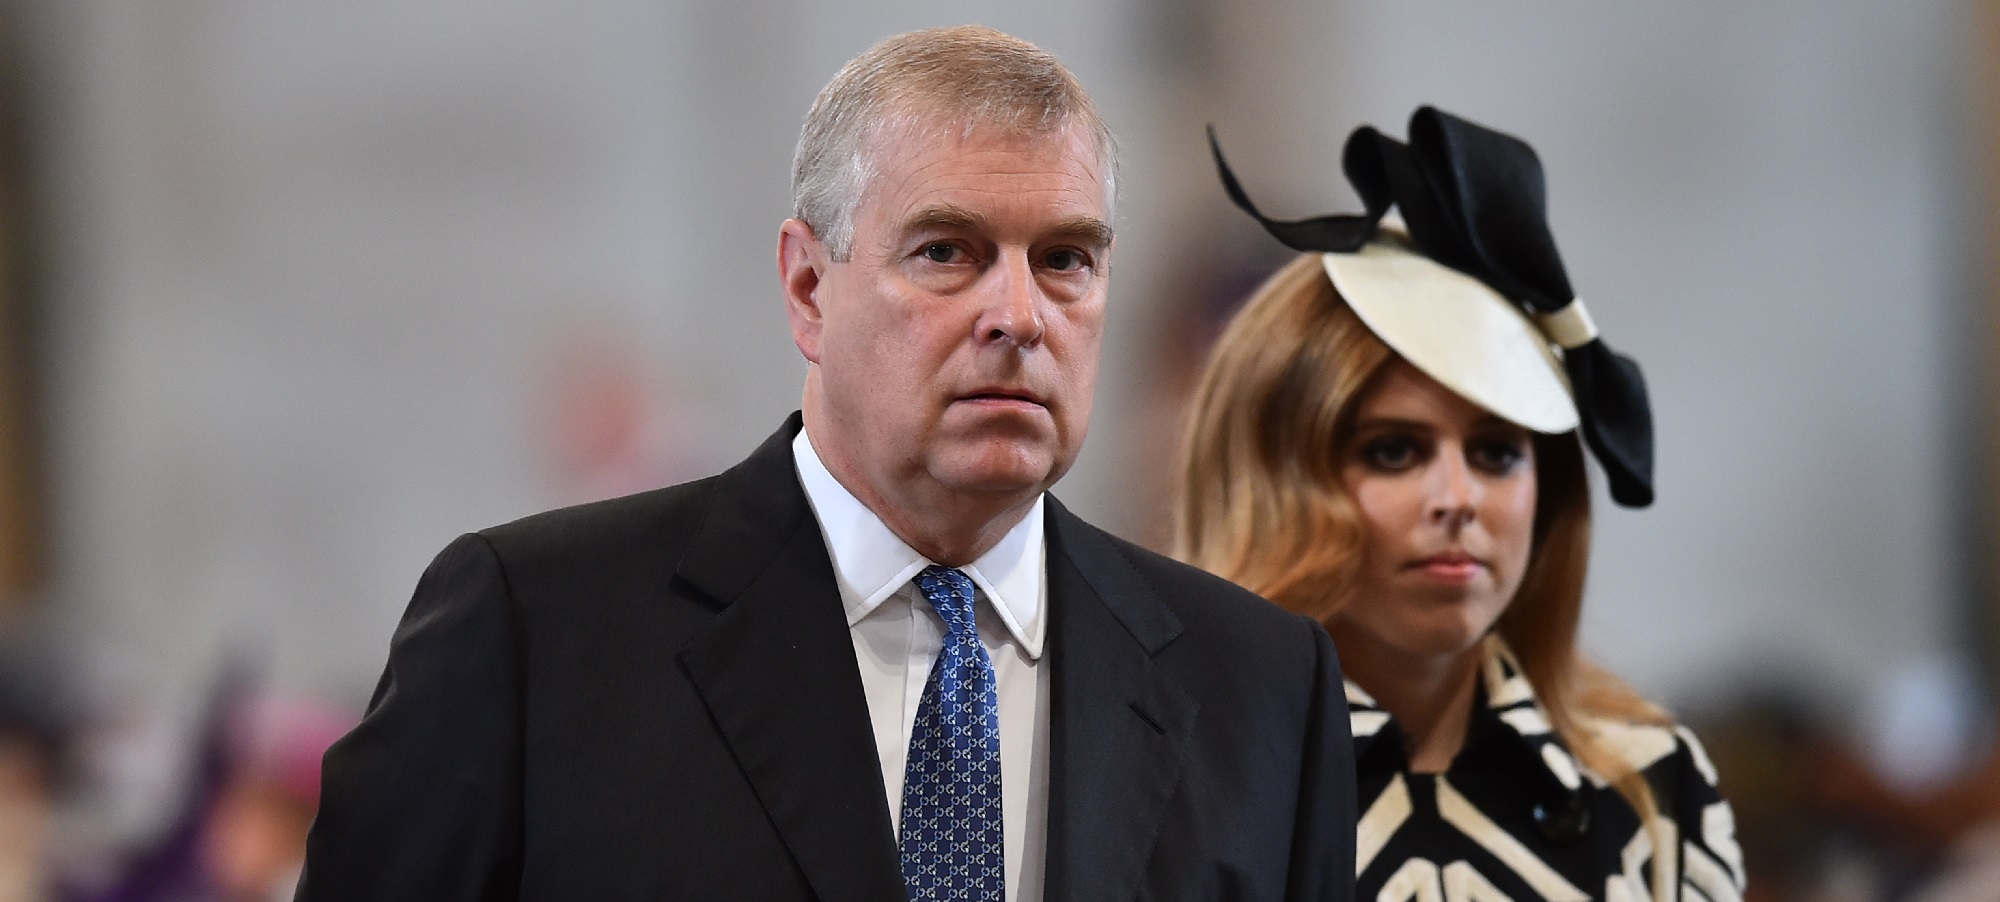 Hija de príncipe Andrés desarmó coartada de su padre por acusación de abuso sexual en caso Epstein